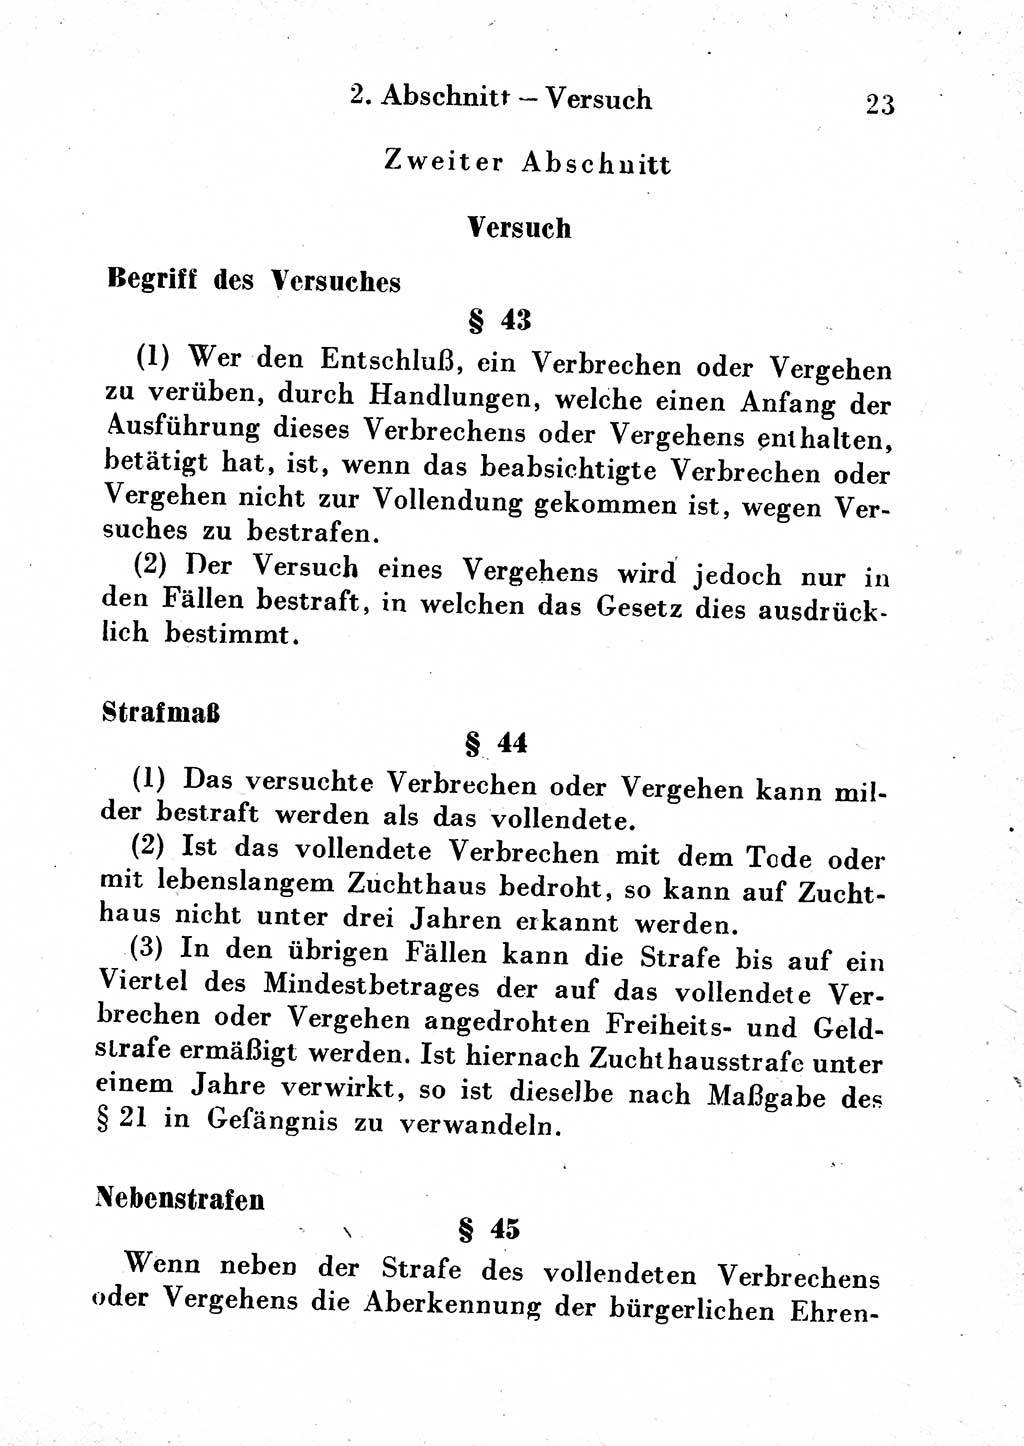 Strafgesetzbuch (StGB) und andere Strafgesetze [Deutsche Demokratische Republik (DDR)] 1954, Seite 23 (StGB Strafges. DDR 1954, S. 23)